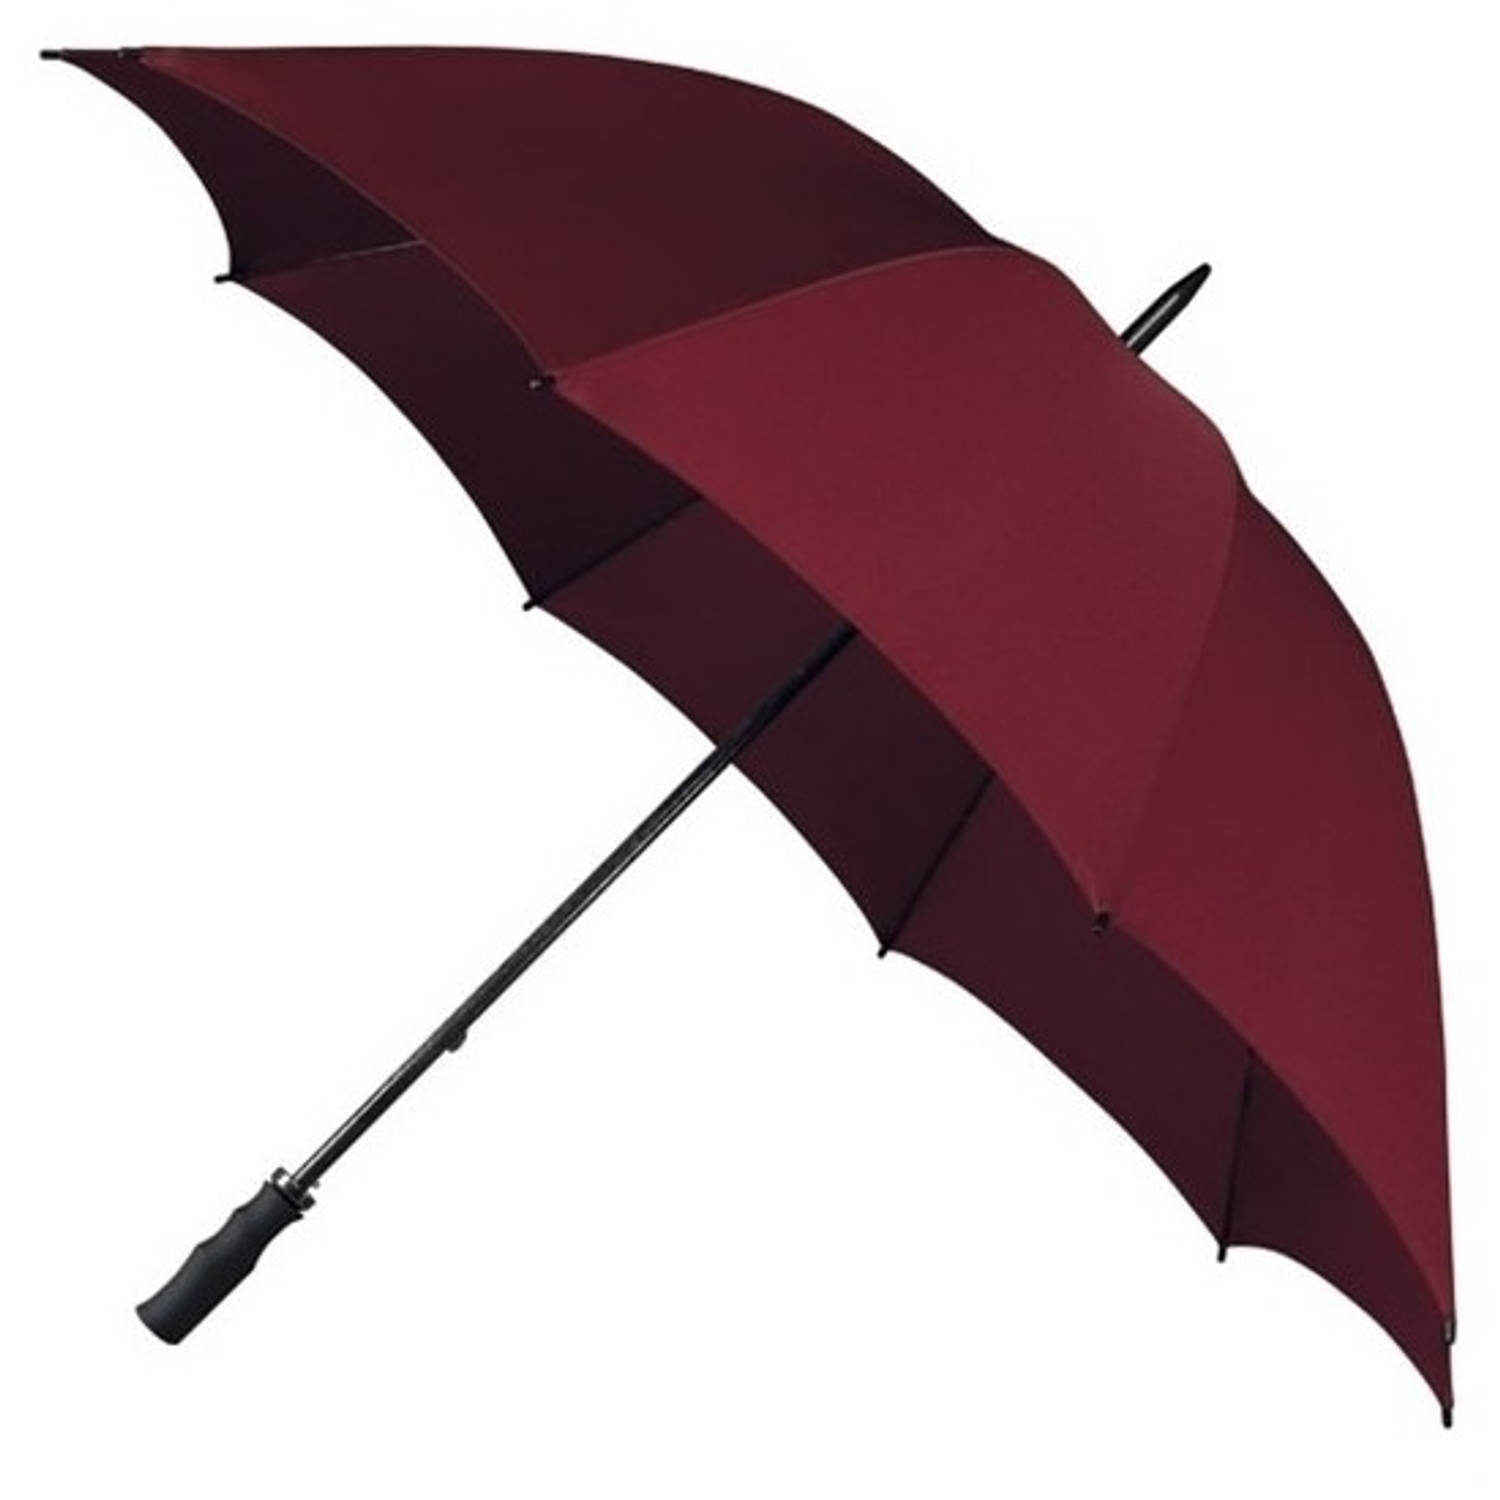 Stormparaplu bordeaux rood 130 cm - Paraplu's